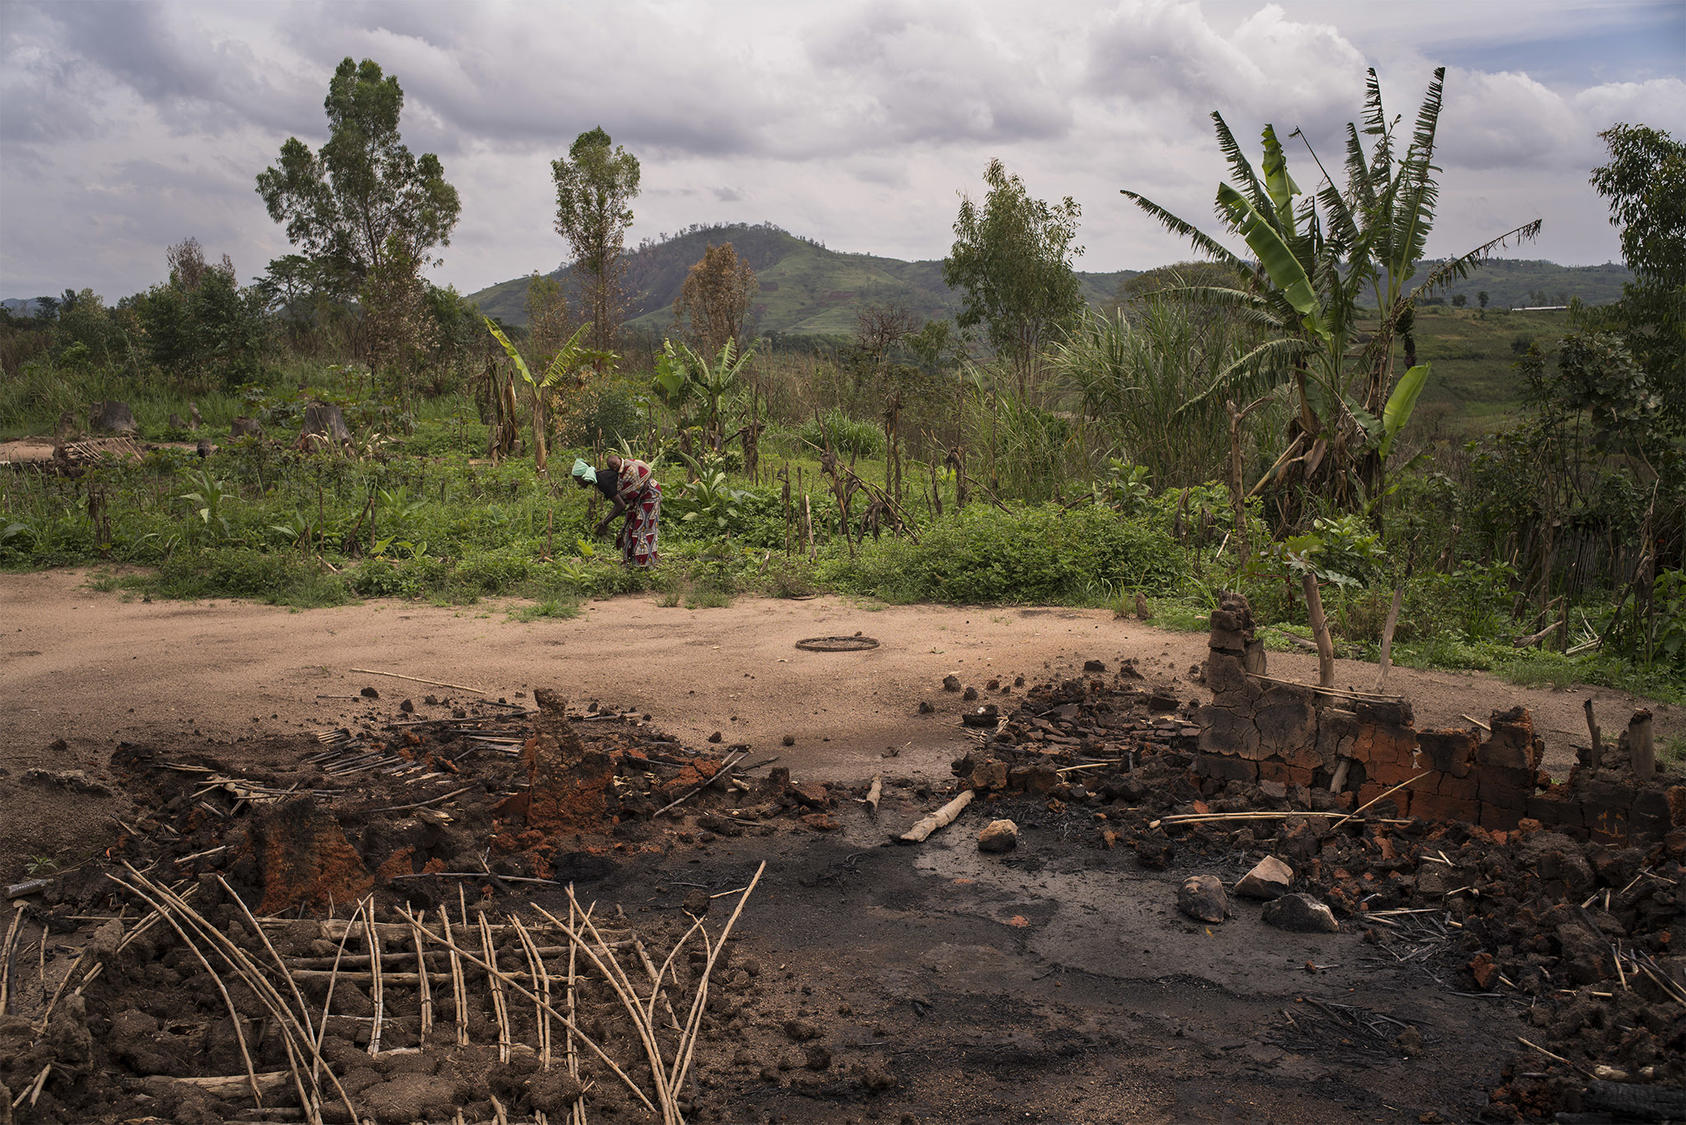 Une femme récupère ses récoltes près des restes de sa maison, incendiée lors des combats en Ituri en 2018. Un quart de la population de la province a été déracinée de manière forcée au cours des années de violence. (Diana Zeyneb Alhindawi/New York Times)